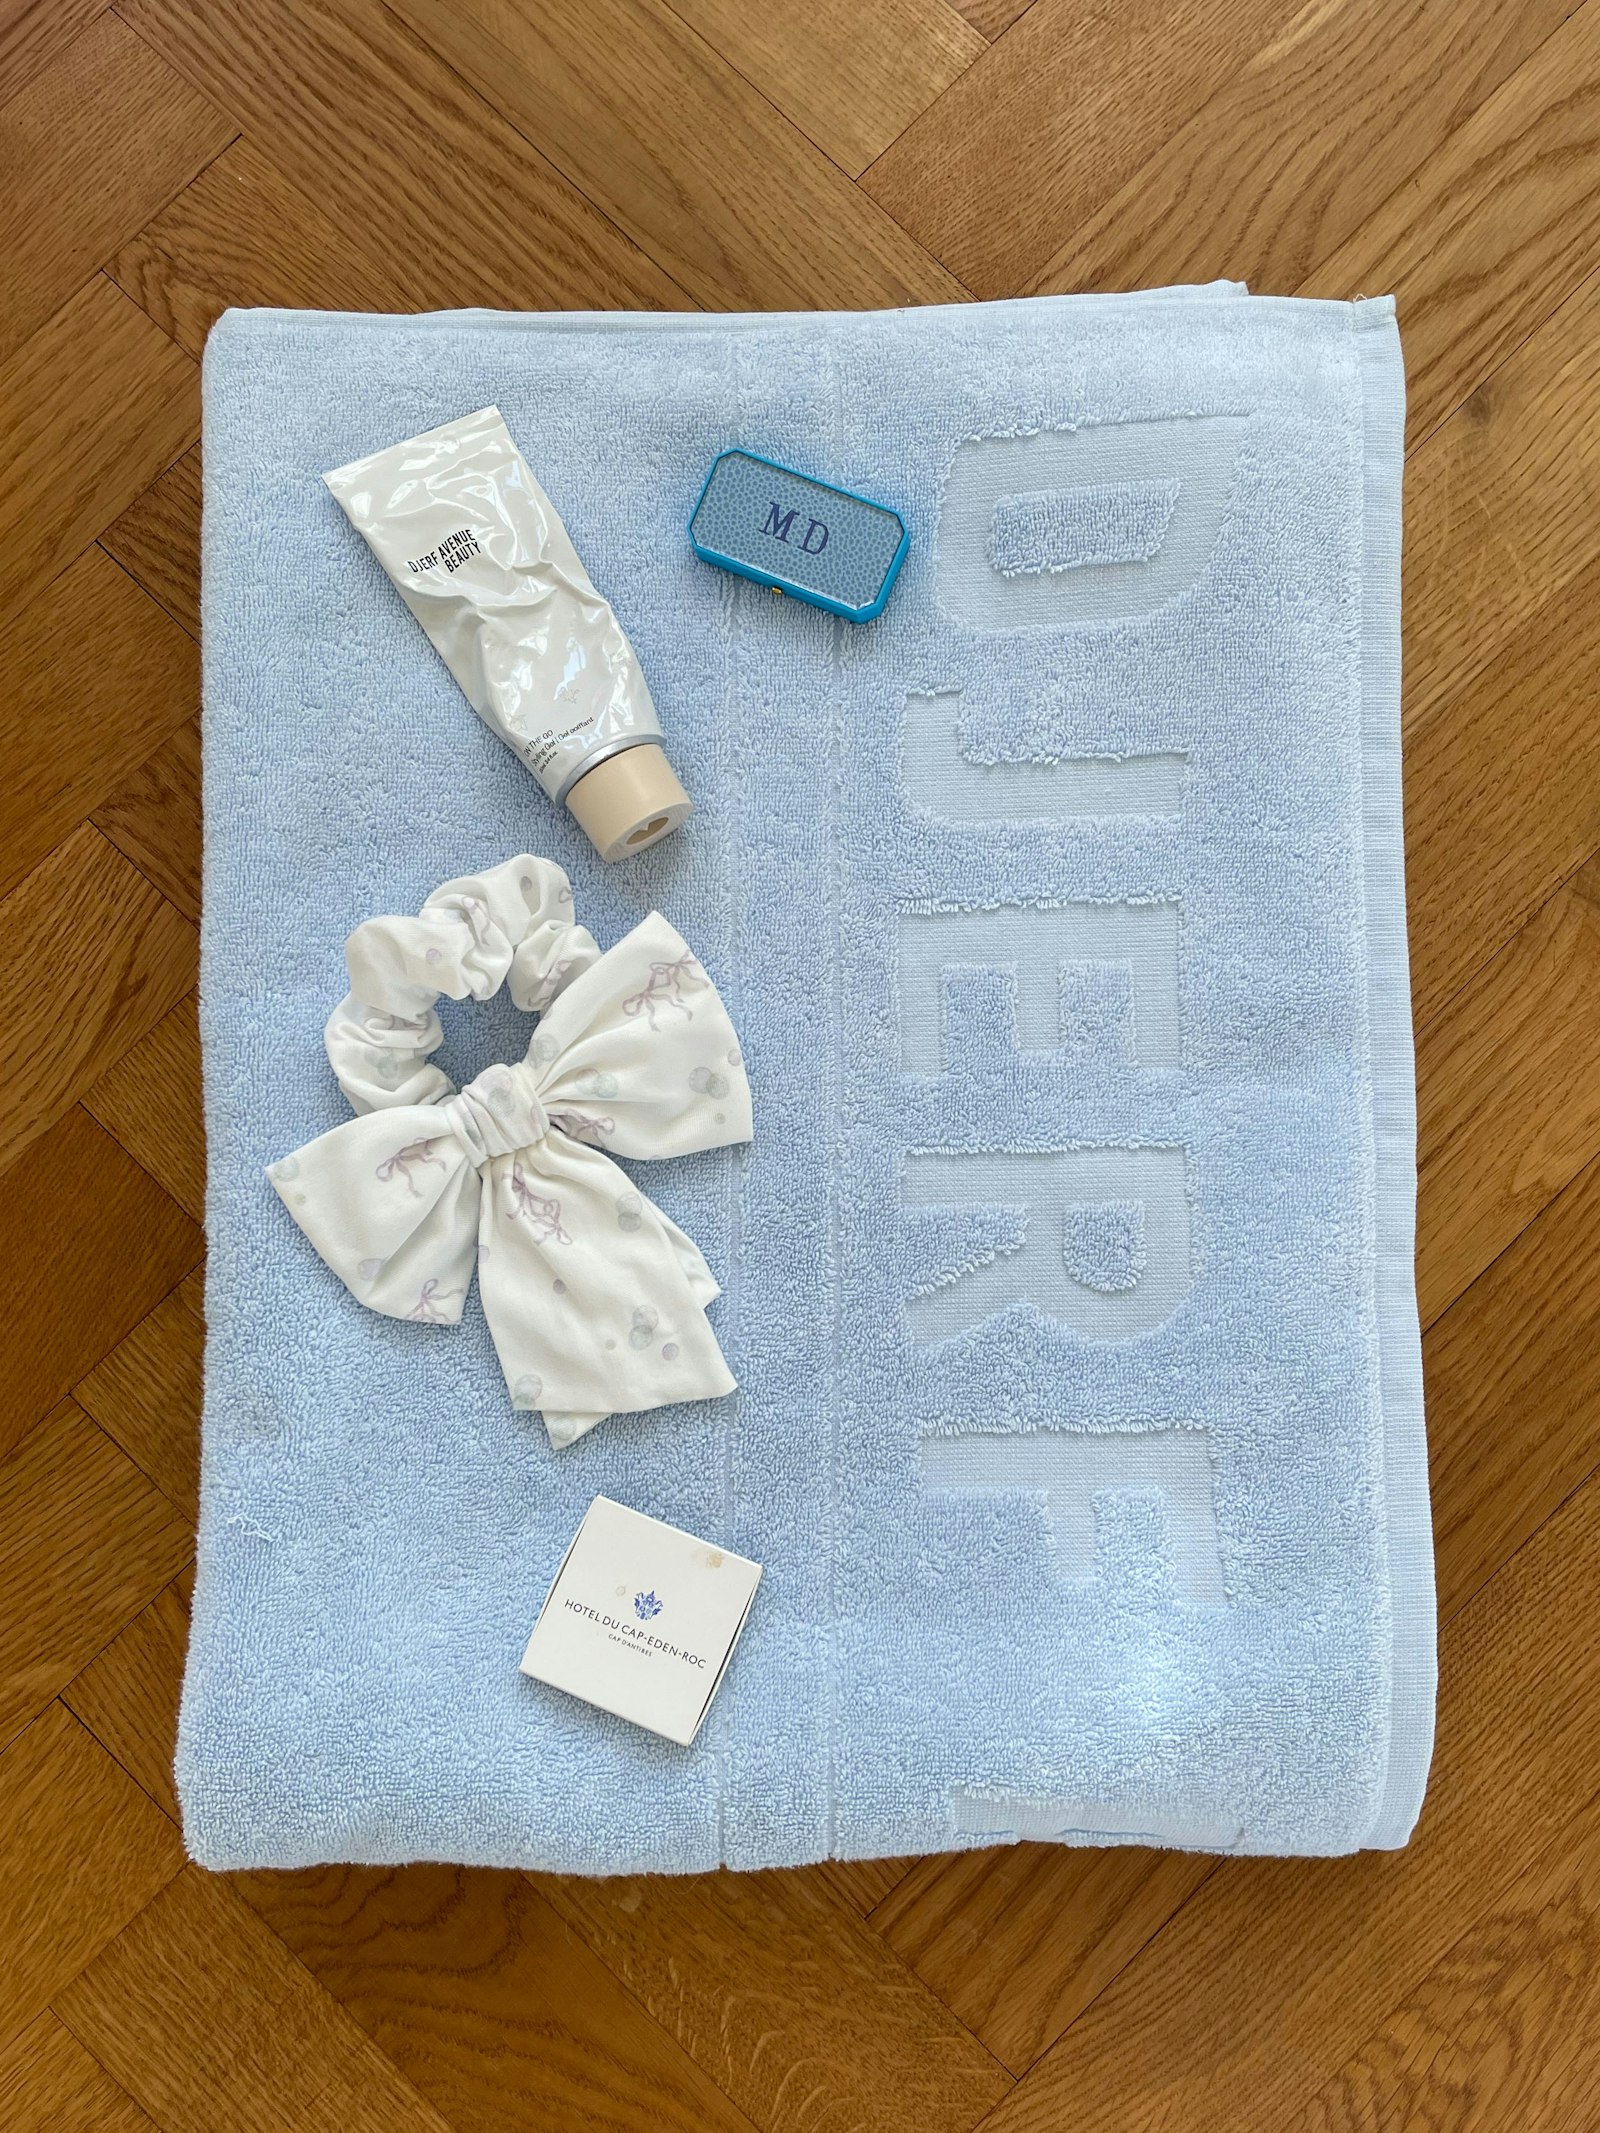 Bath Towel Blue